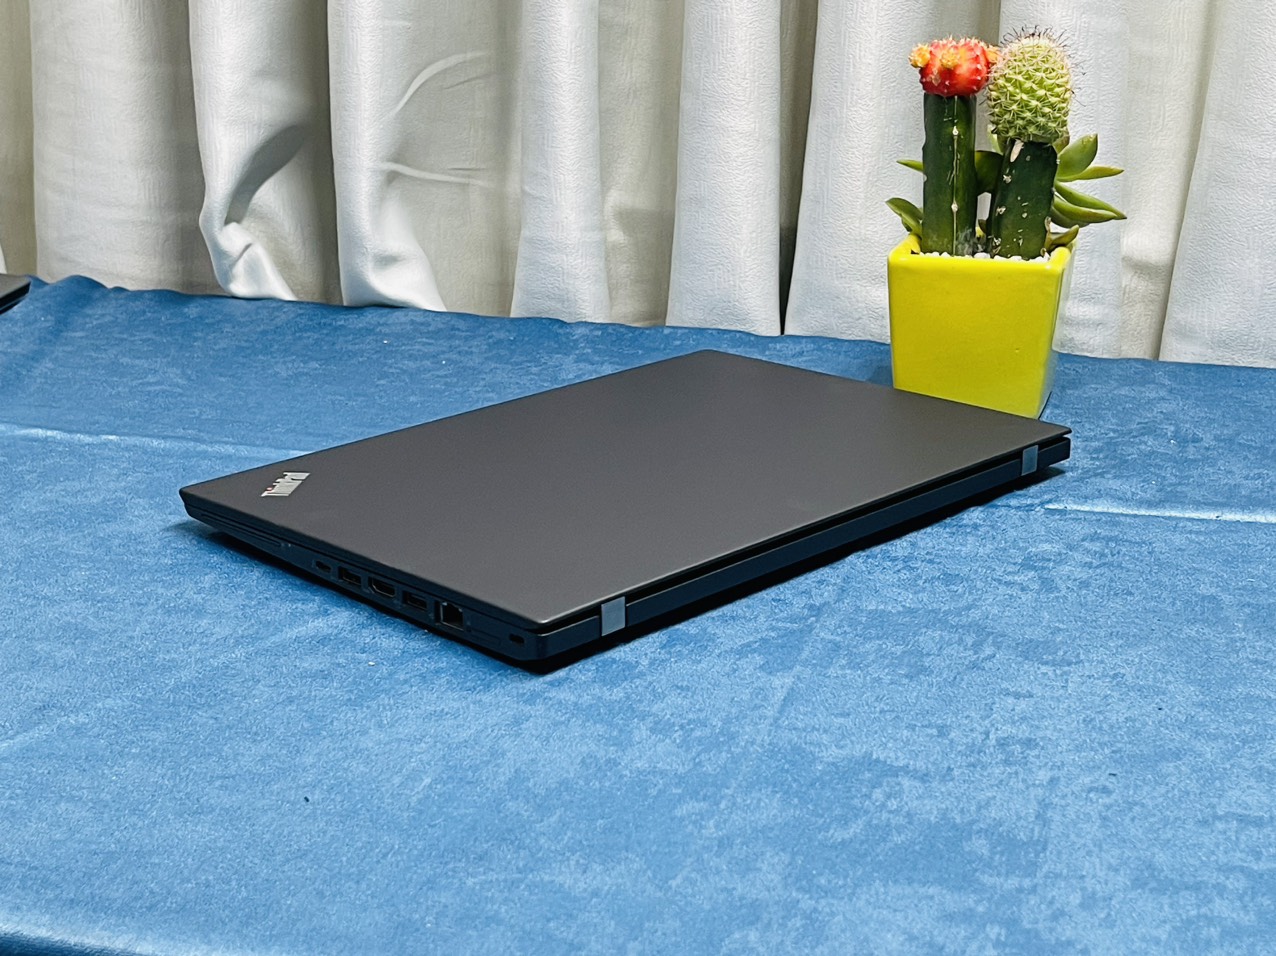 Lenovo Thinkpad T470s i7-6600U RAM 8G SSD 256G 14" FHD Mỏng Đẹp Siêu Bền